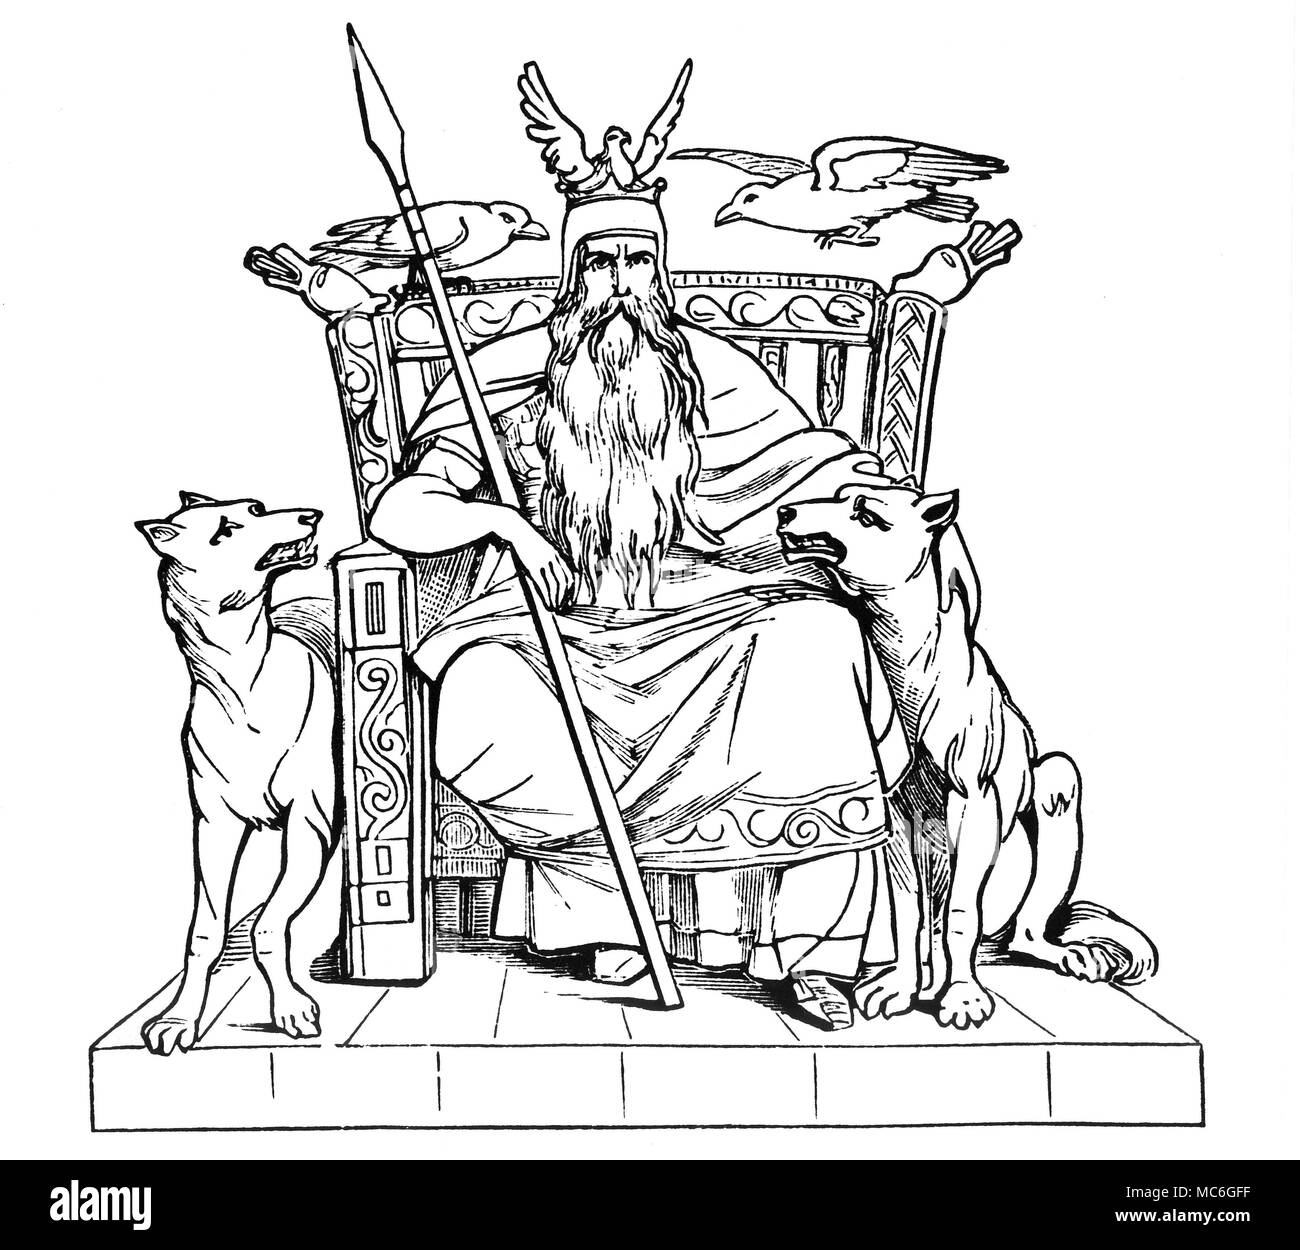 Germanische Mythologie - ODIN der Gott Odin mit seinen Geschöpfen, die uns daran erinnert, dass er ursprünglich ein, er war das Oberhaupt der Raven Clan. Odin war der Gott der Toten, für seine List und Klugheit berühmt: Er war es, der durch großen persönlichen Leid, die magischen Runen über die Menschheit gebracht. 19. jahrhundert Holz-Gravur. Stockfoto